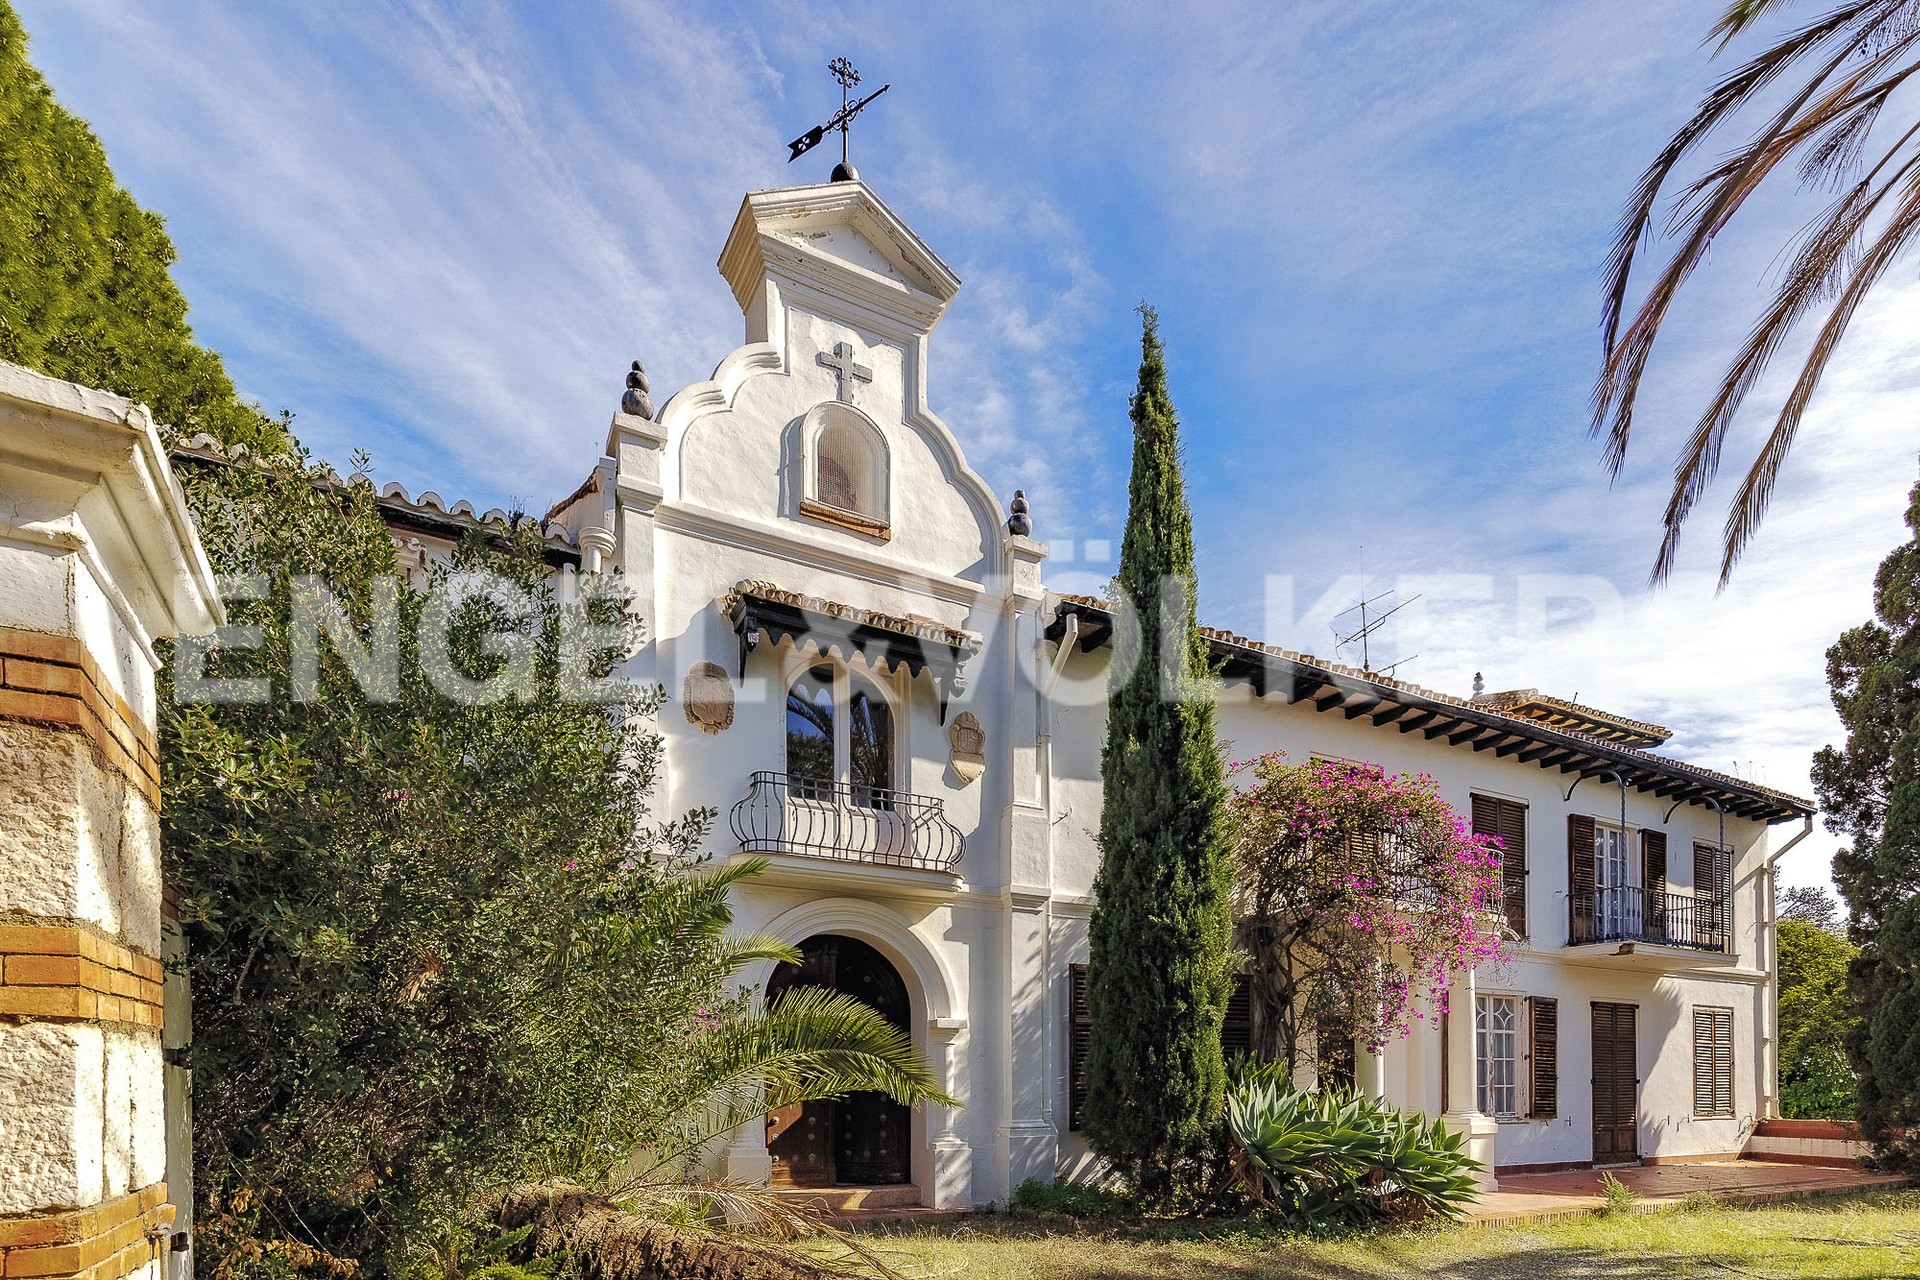 House in Candado, pinares, Miraflores, Palo